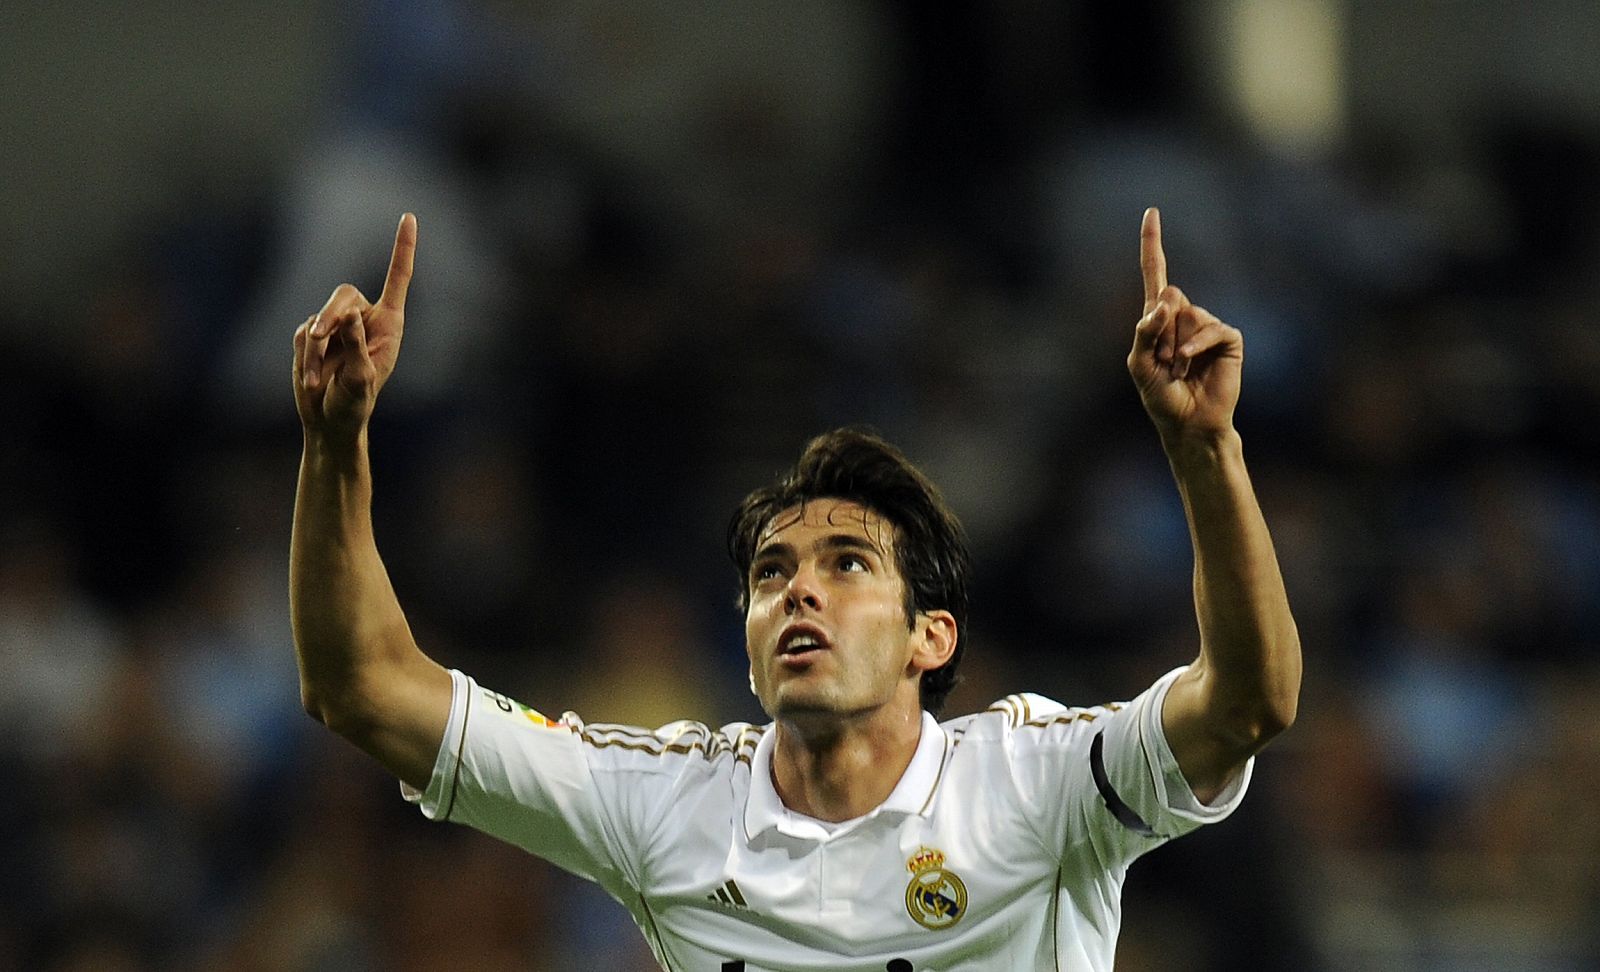 El jugador brasileño del Real Madrid, Kaká, celebra un gol durante la presente temporada